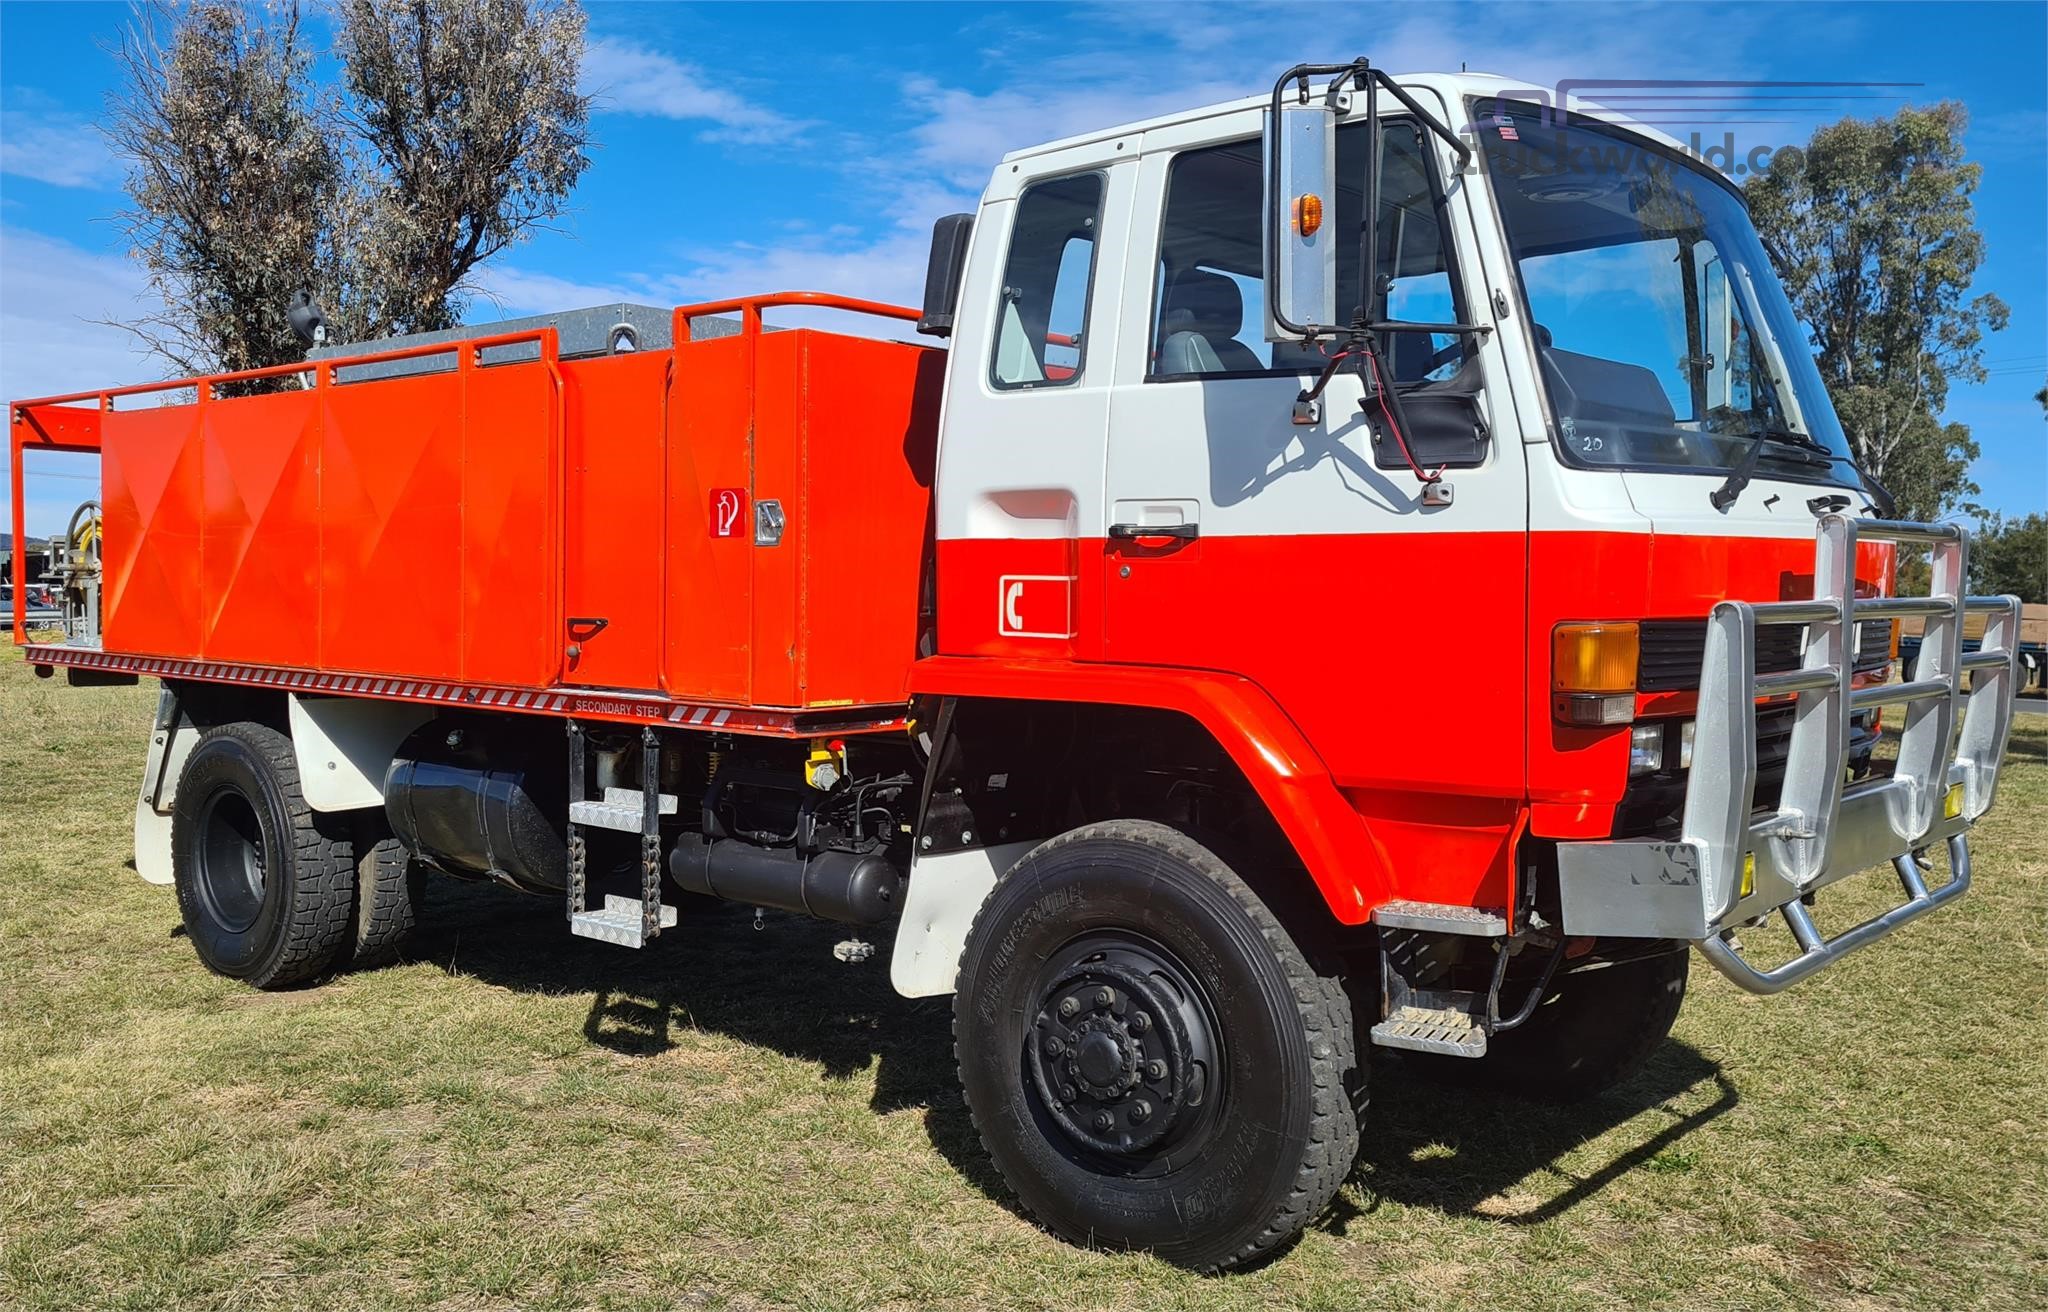 1987 Isuzu FTS Fire Truck truck for sale Grand Motor Group ...